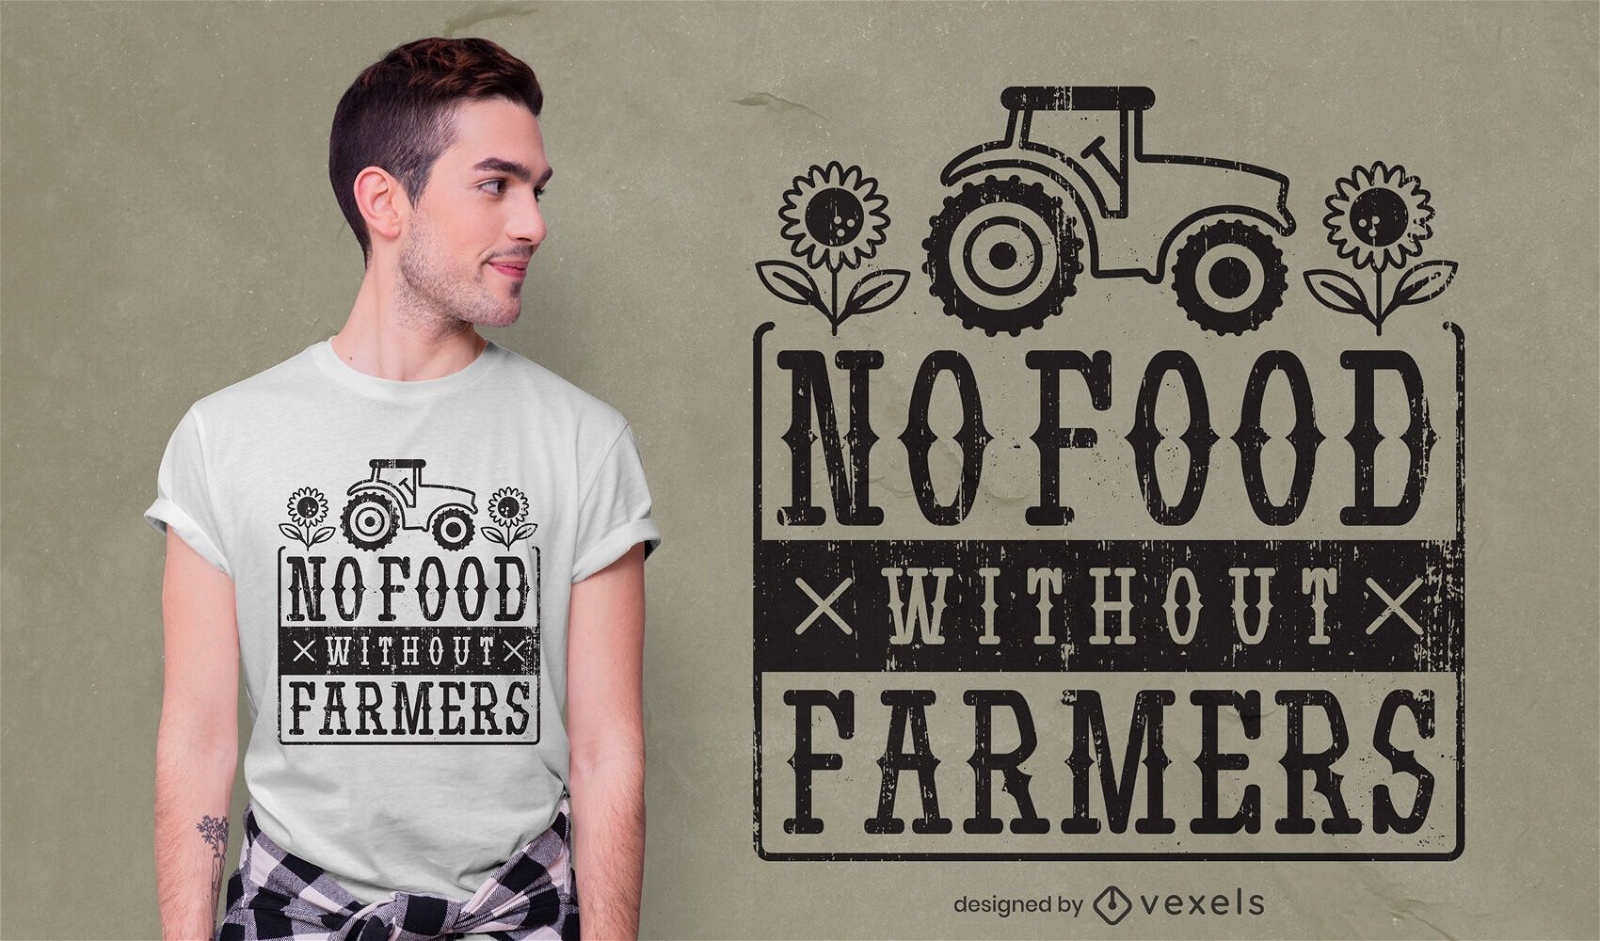 No hay comida sin dise?o de camiseta de agricultores.